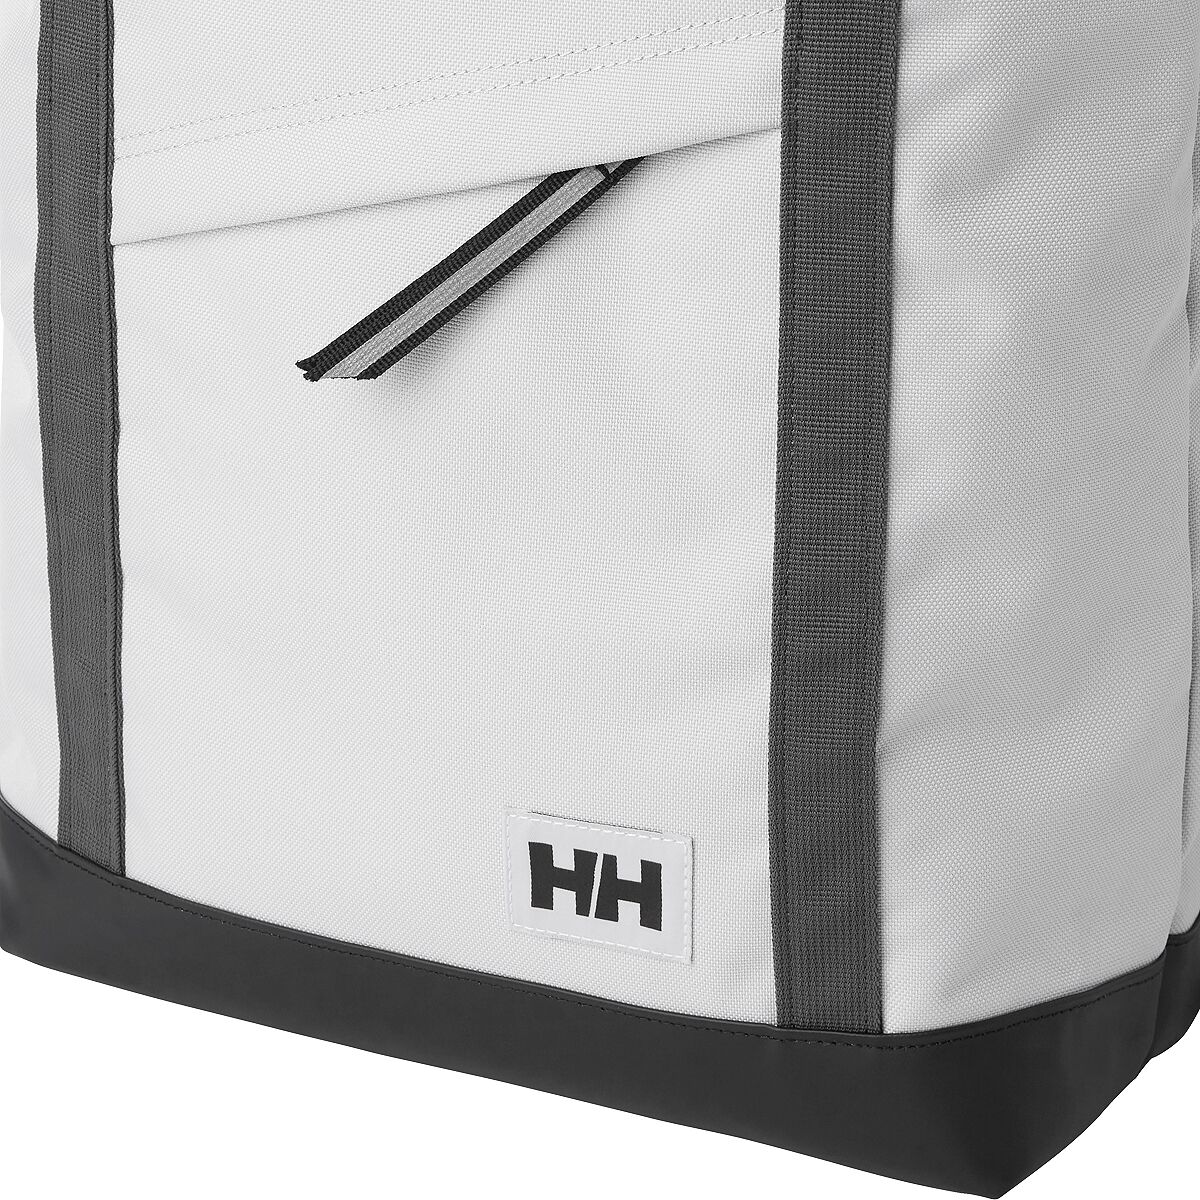 Helly Hansen - Stockholm Backpack